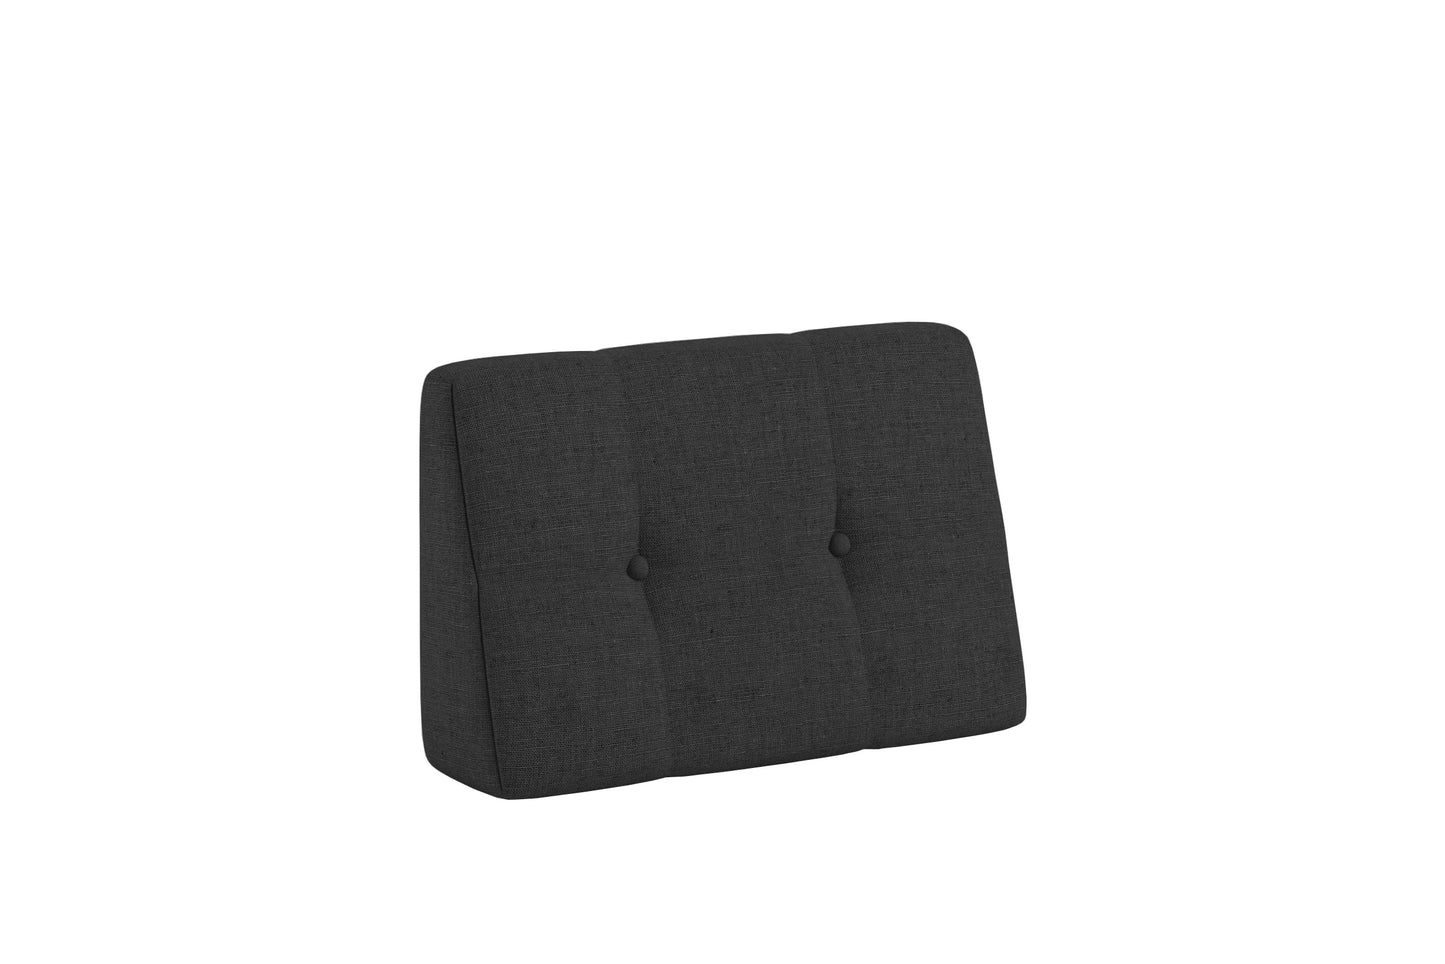  Cuscini trapuntati per mobili in pallet per interni ed esterni cuscino dello schienale al taglio obliquo trapuntato